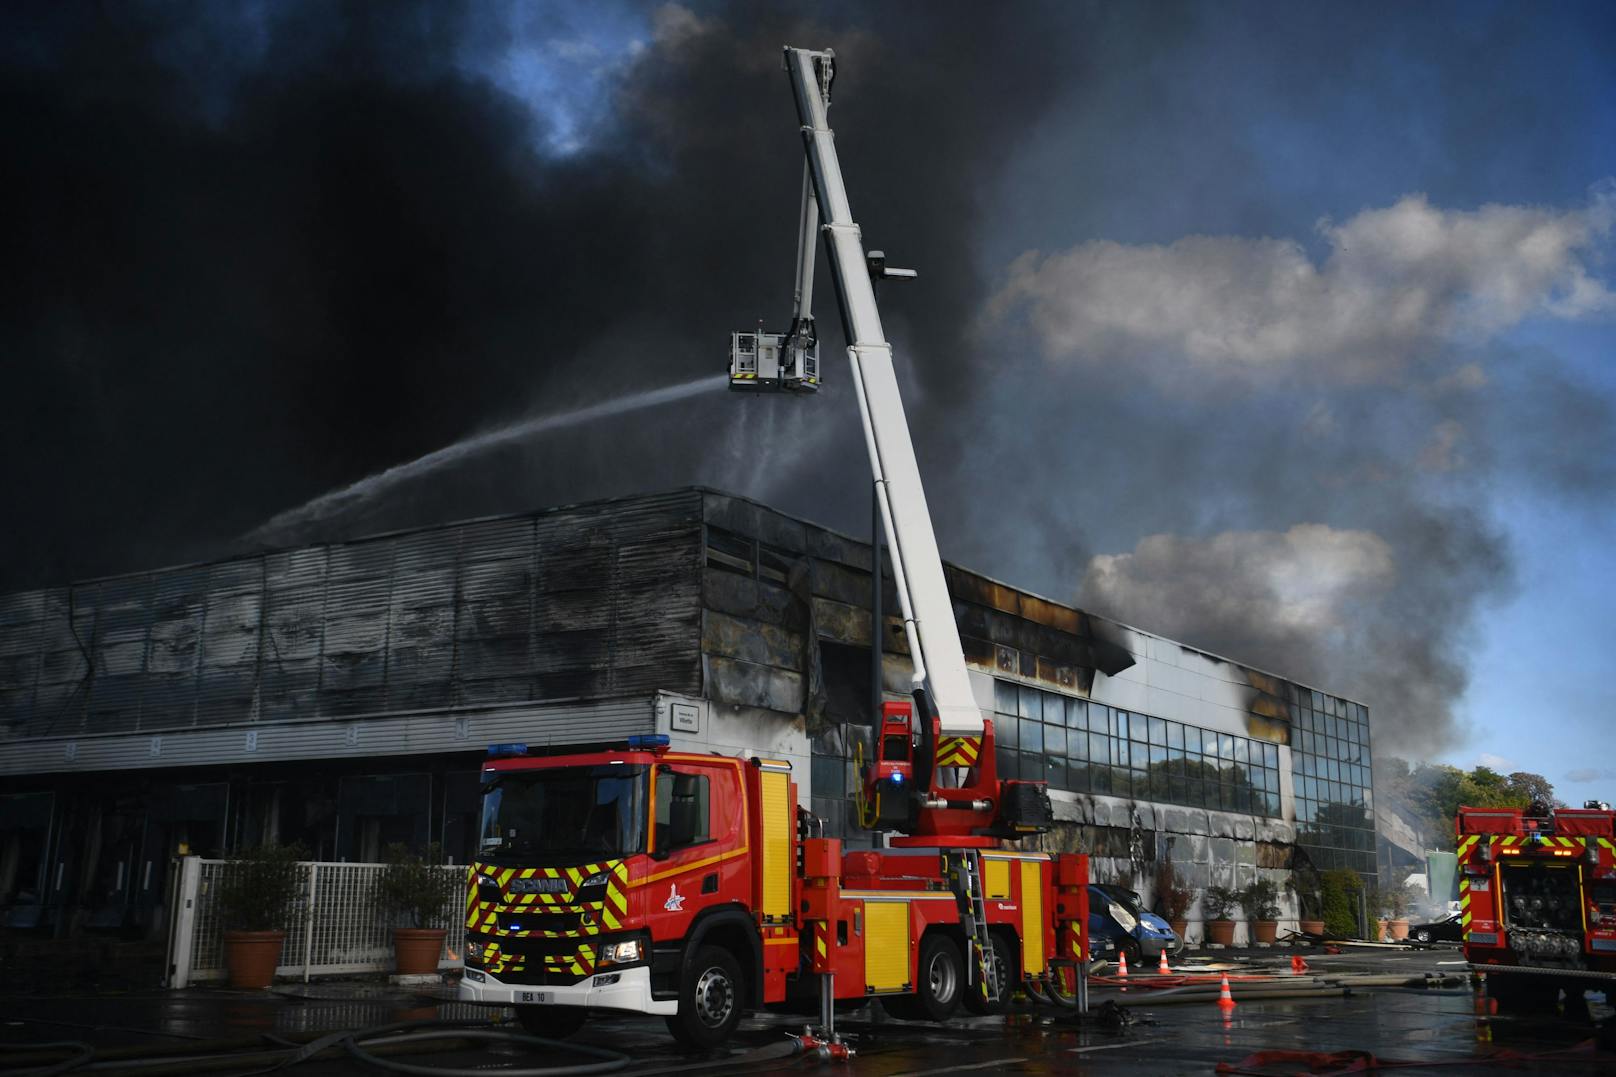 Am Sonntag, 25. September 2022, ist auf dem Frischwaren-Großmarkt Rungis ein Großbrand ausgebrochen.